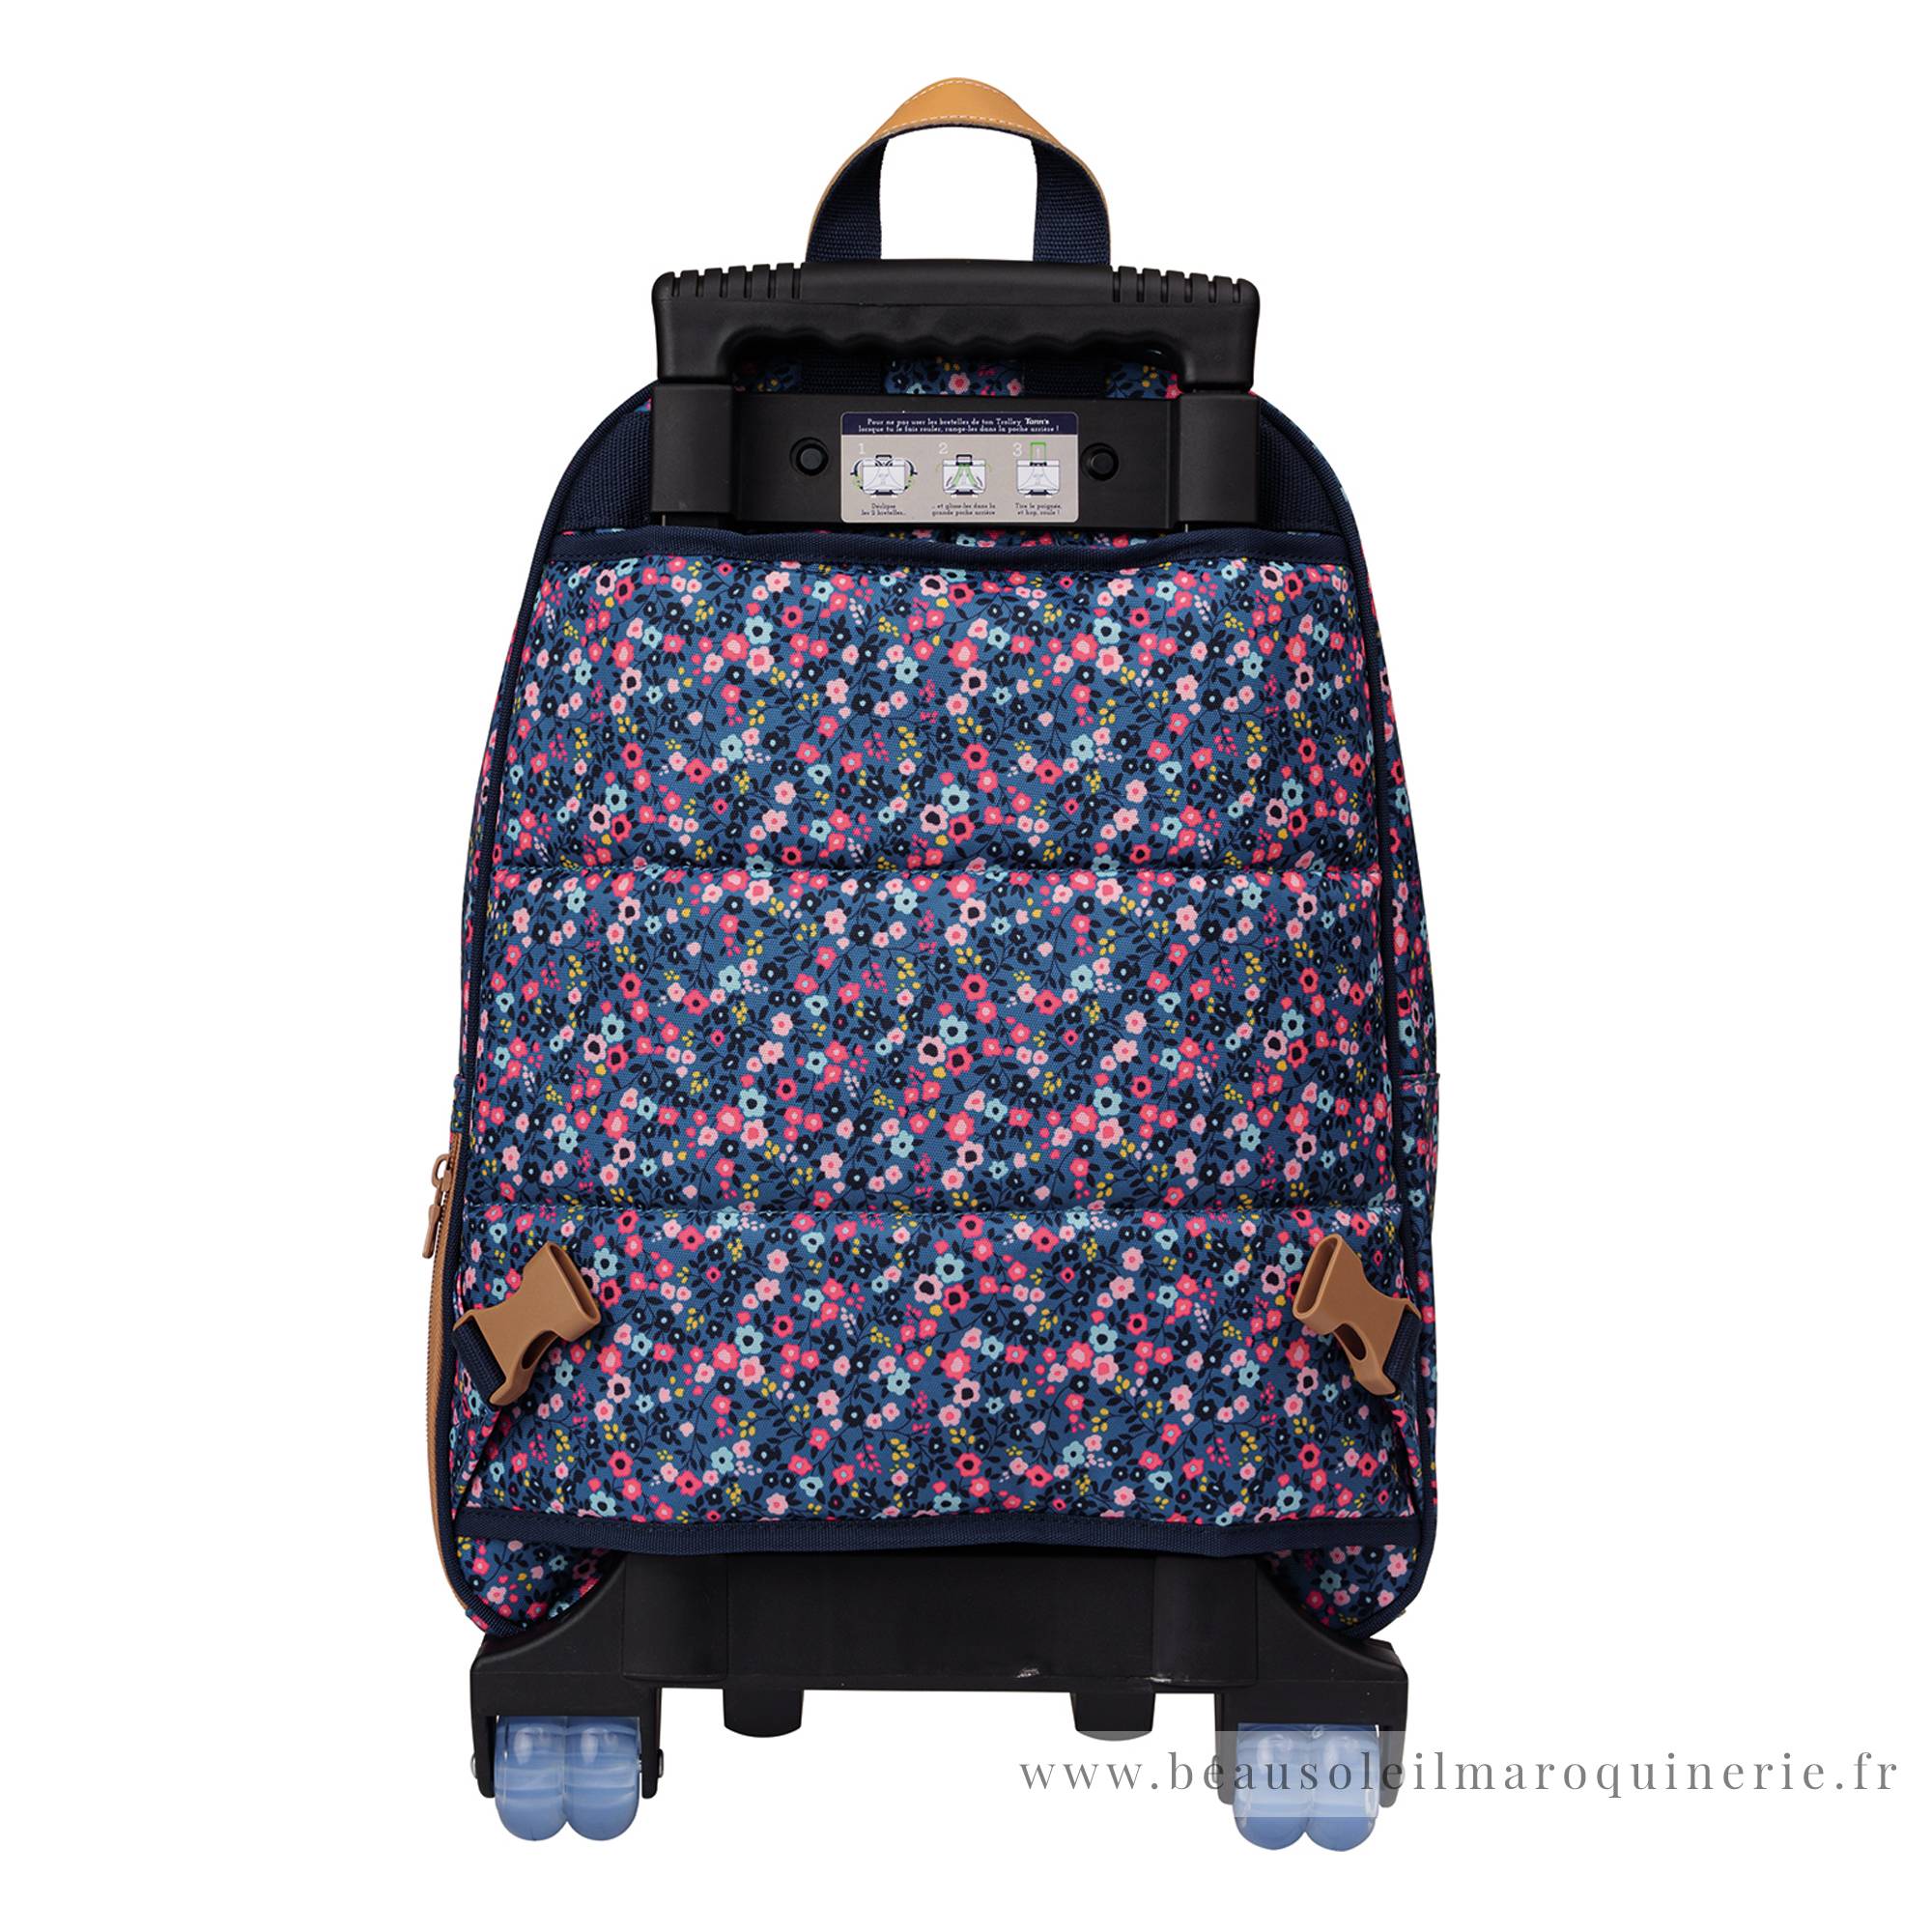 Trolley sac à dos L Tann's Lou Ann motif fleuri 73136 couleur Bleu/Rose, vue de dos avec bretelles et cache roues